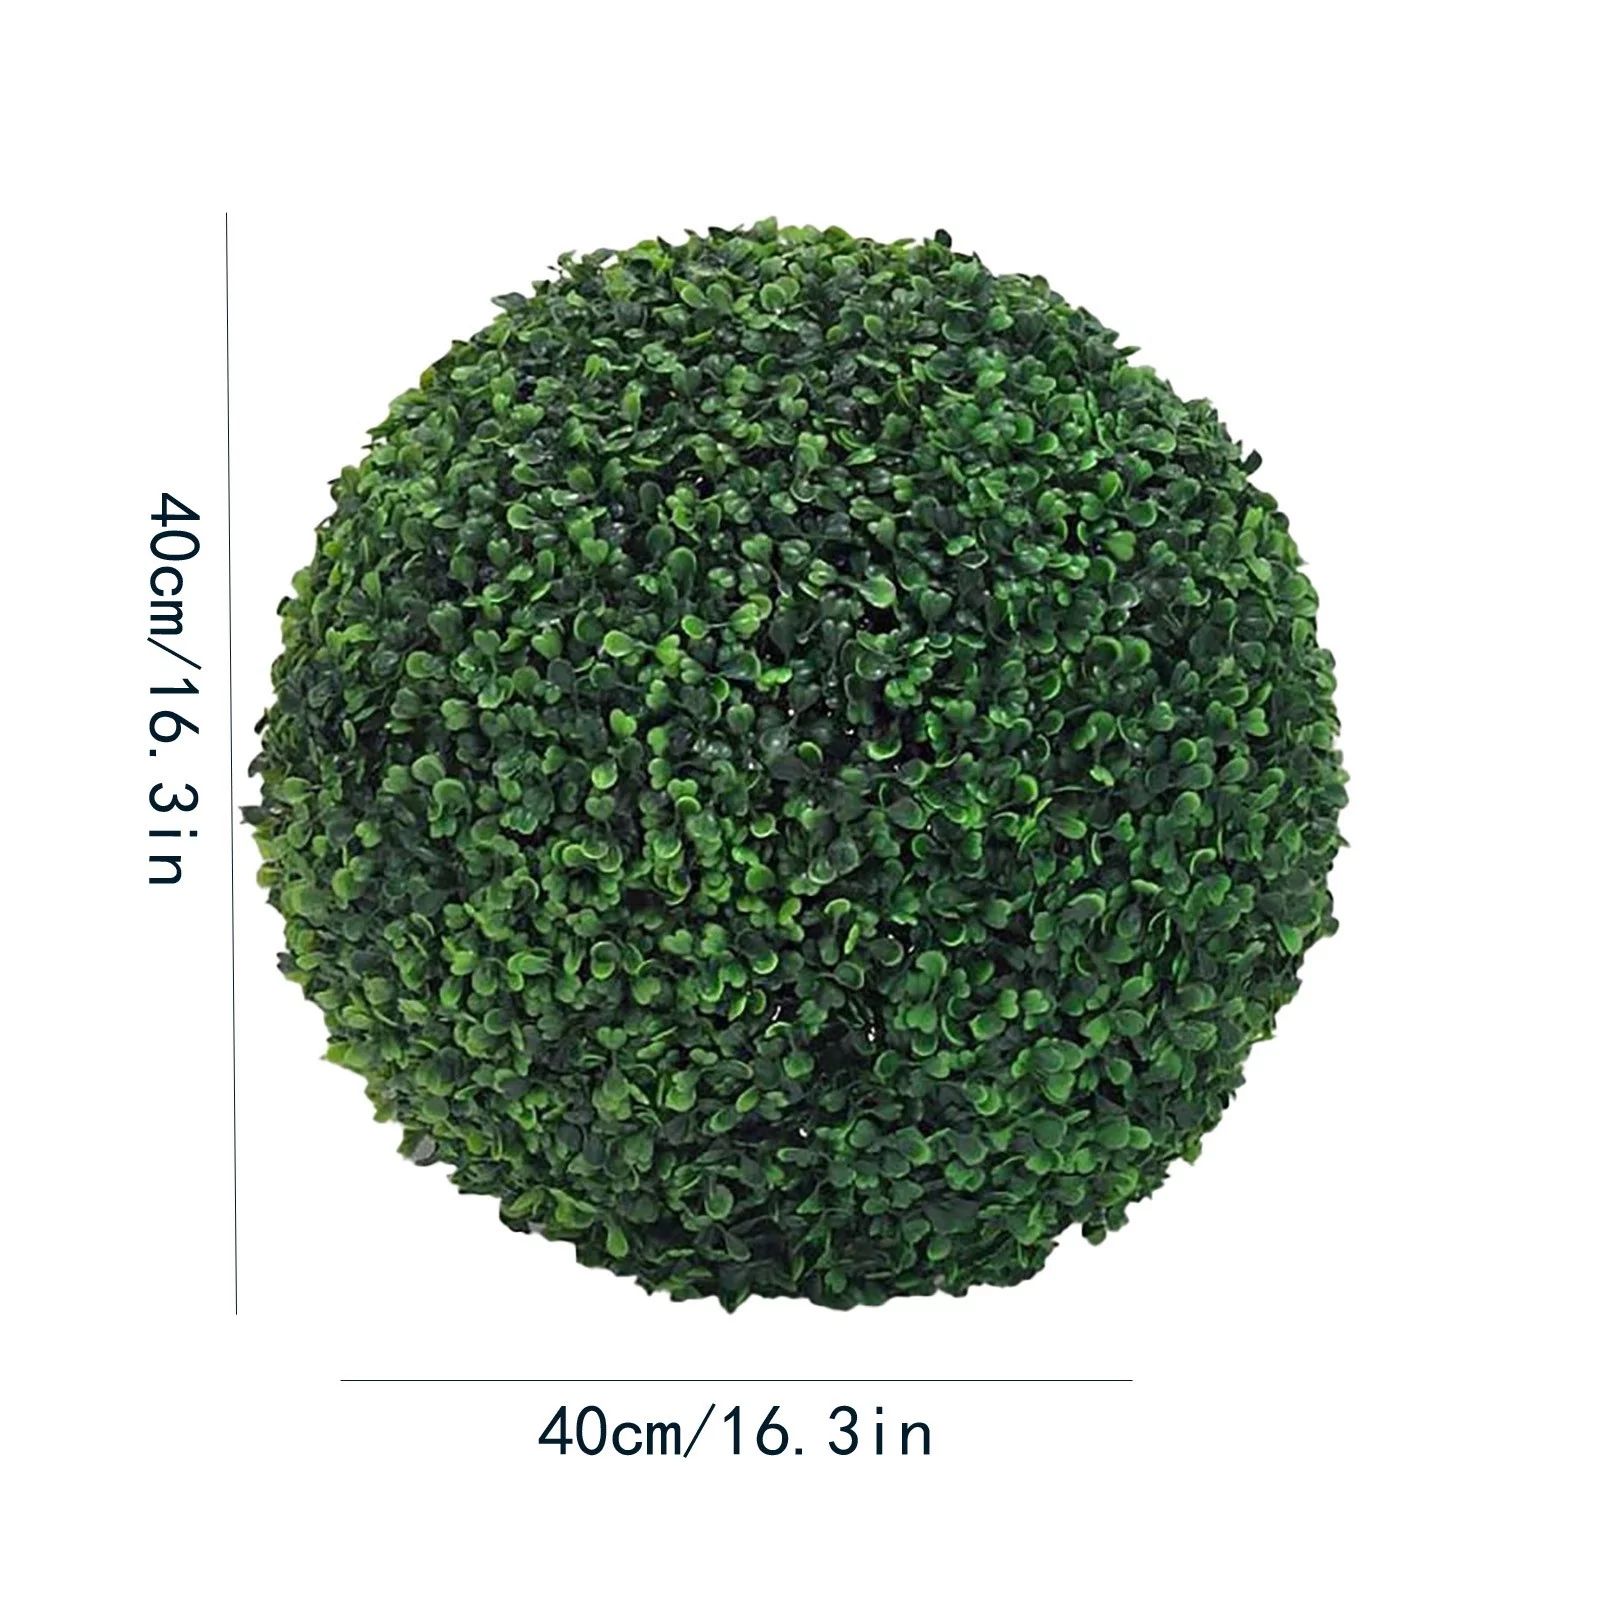 Artificial Plant Topiary Ball Decorative Balls For Garden Wedding & Home Decor AS SHOWN - Walmart... | Walmart (US)